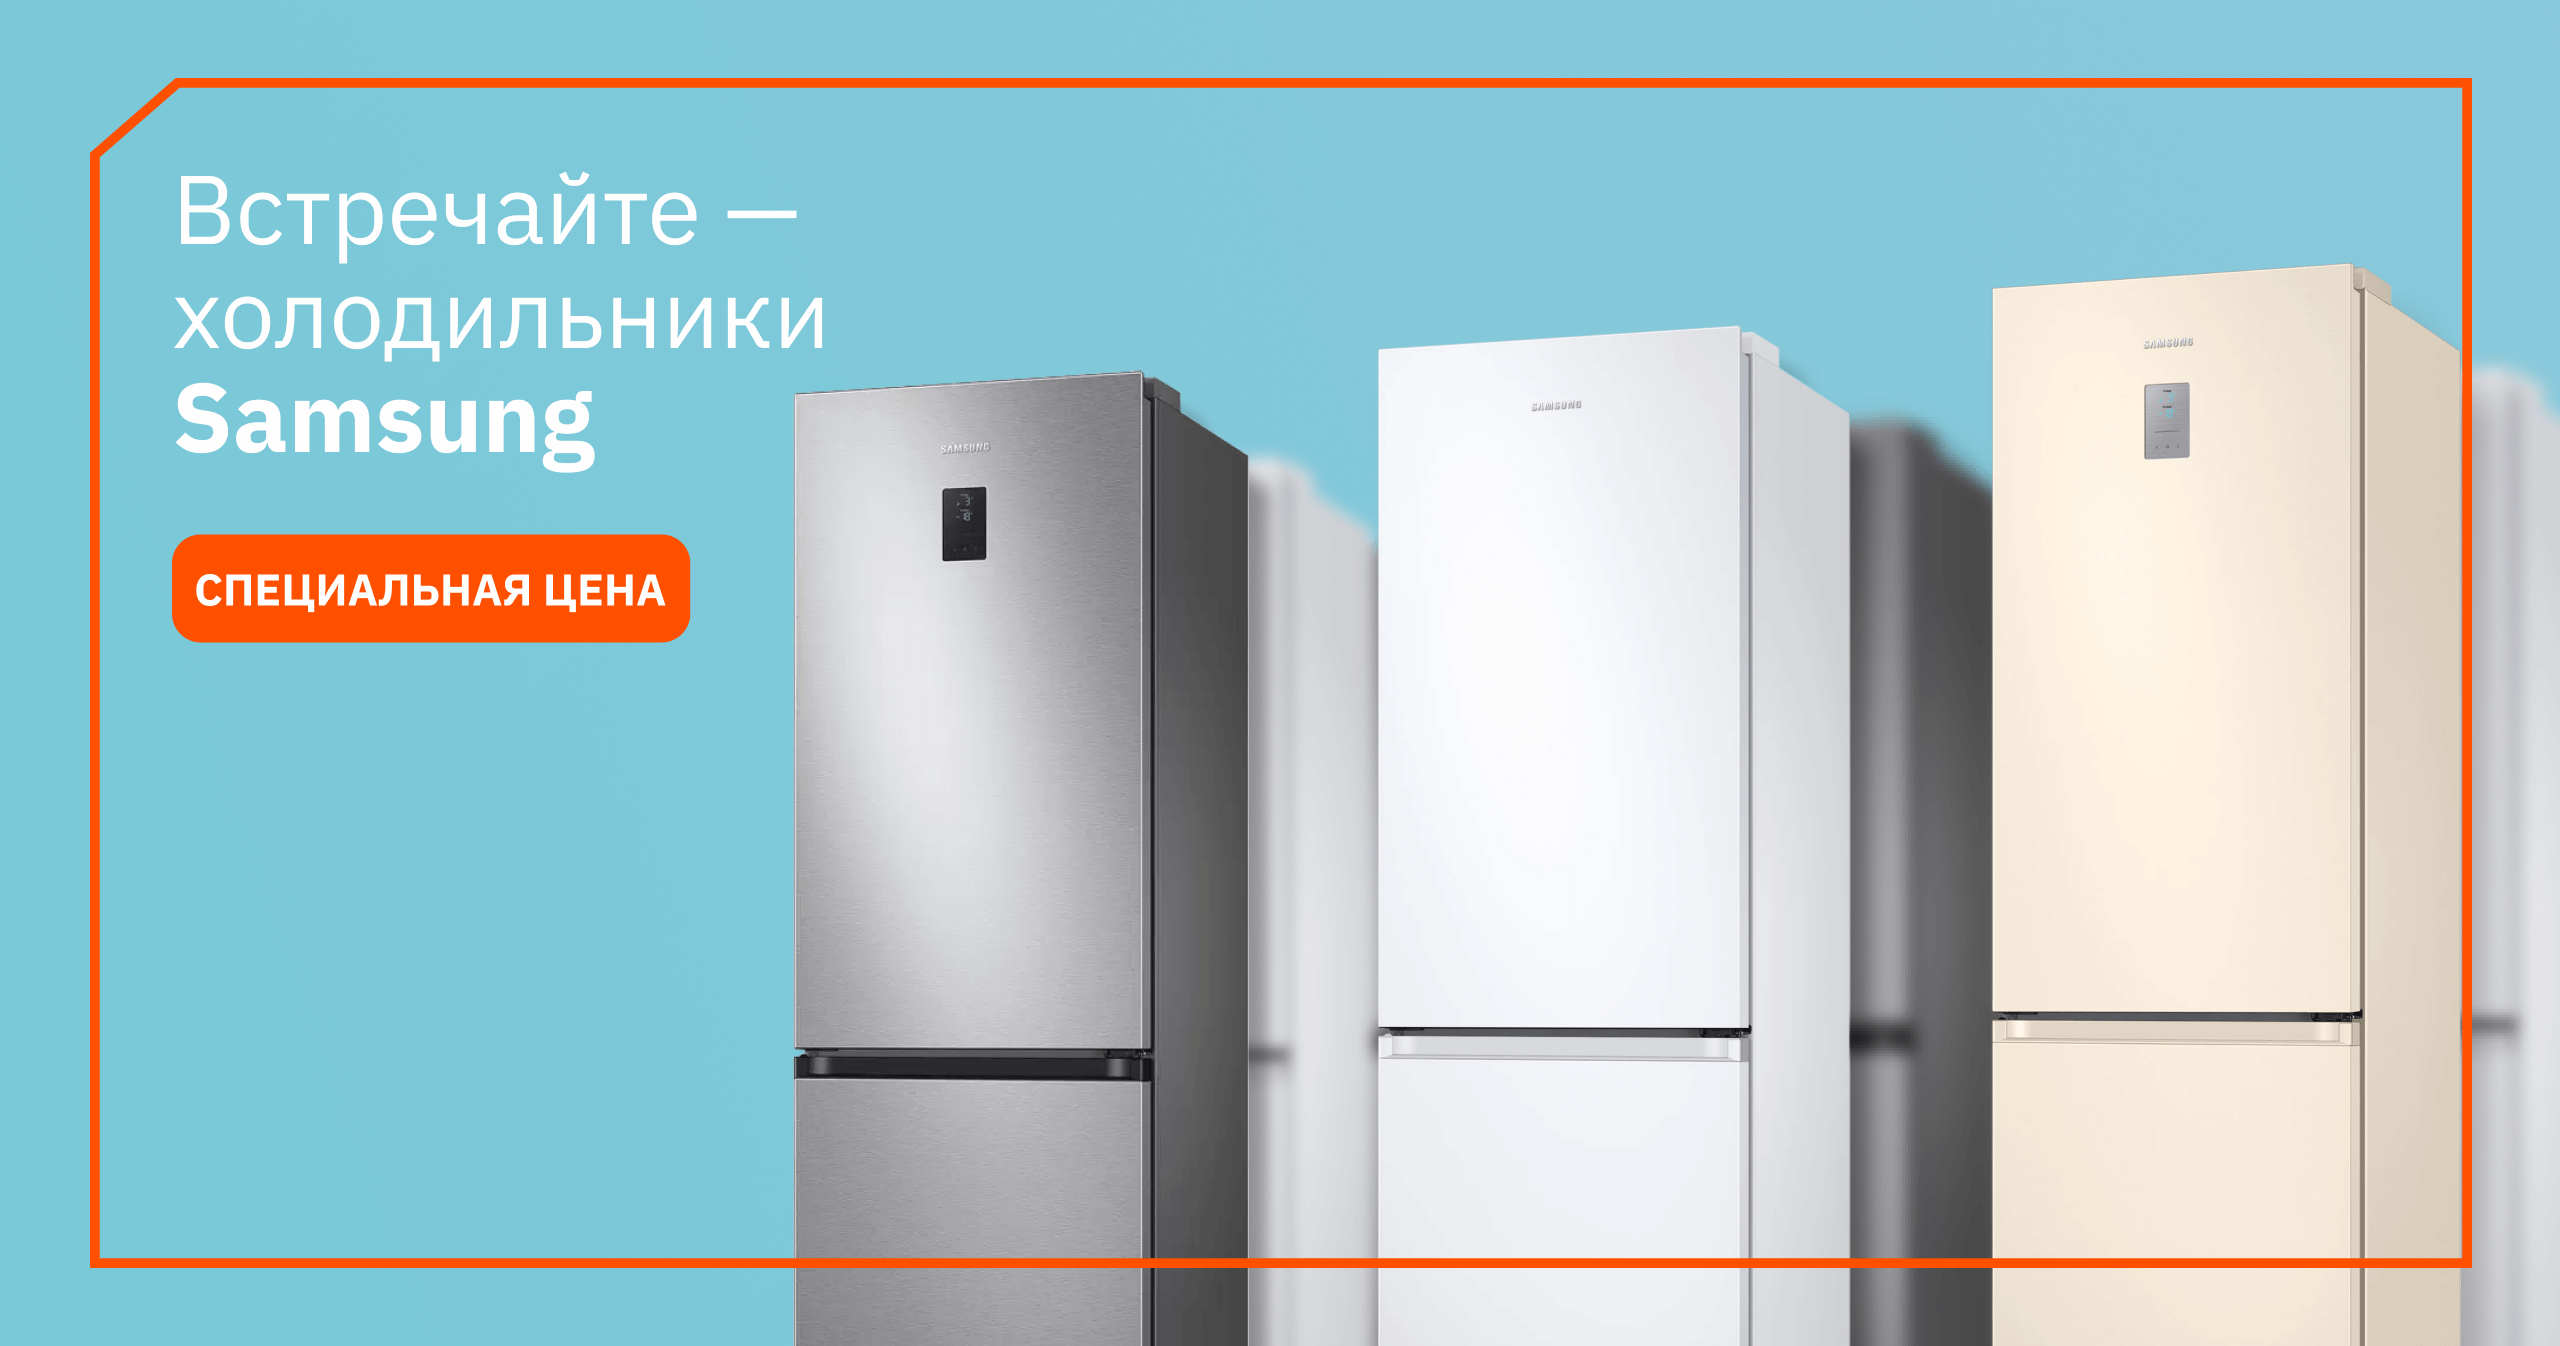 Встречайте холодильники Samsung